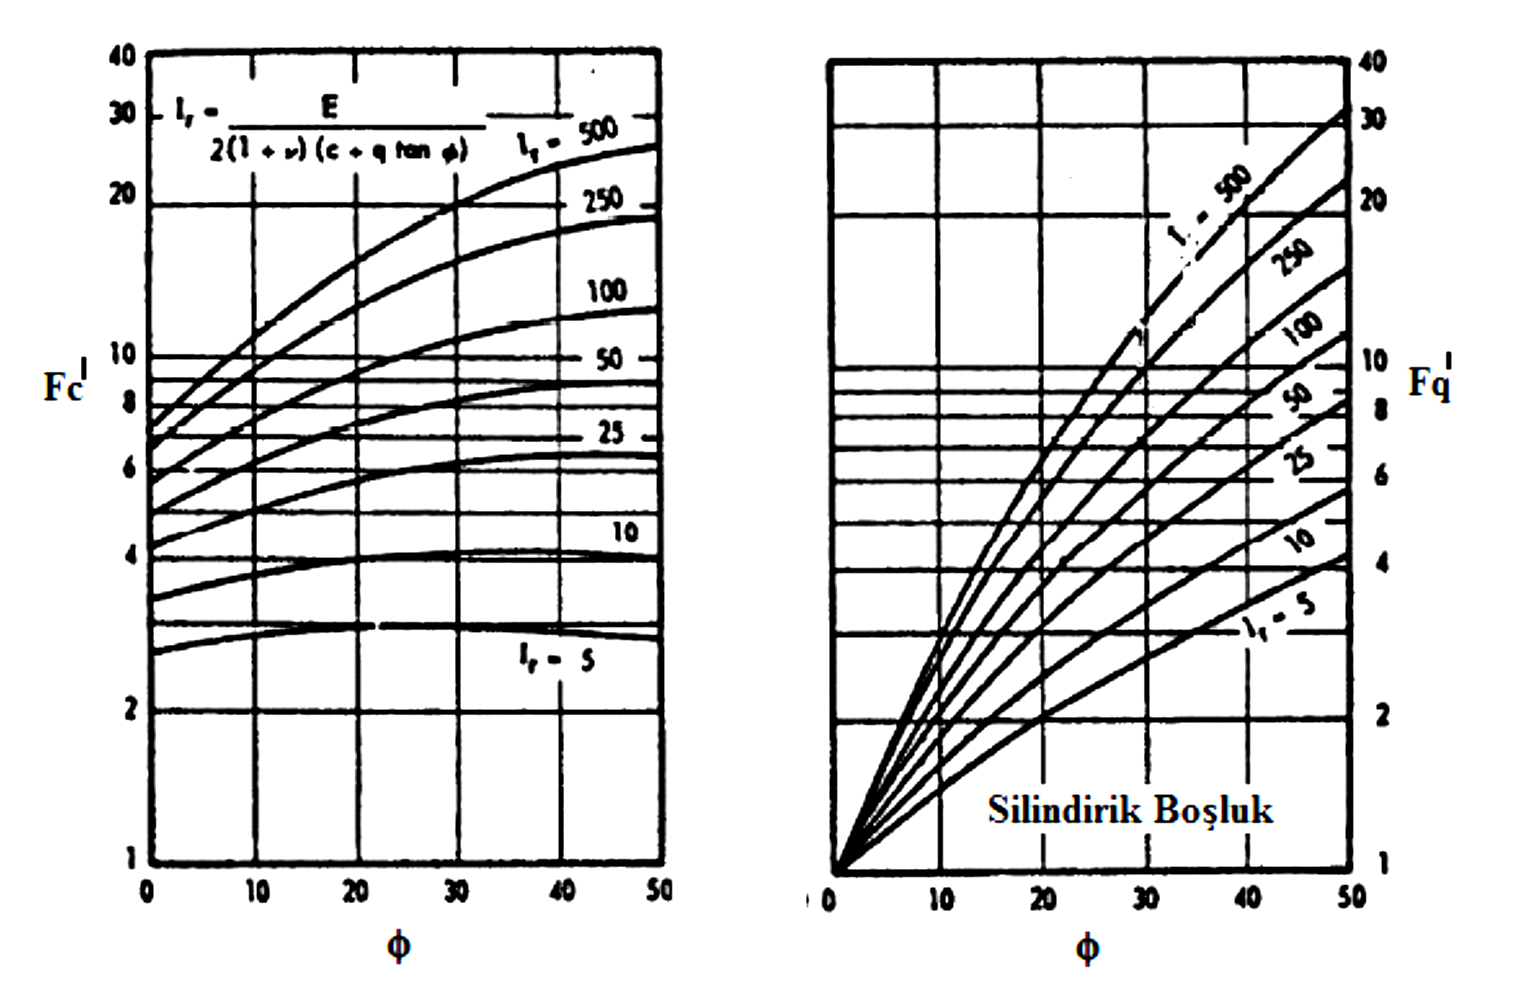 Çizelge 2-7 Silindirik boşluk genişleme katayıları ( Veic, 1972) Braun (1978), geliştirilen analitik yaklaşımları karşılaştırmışlardır.